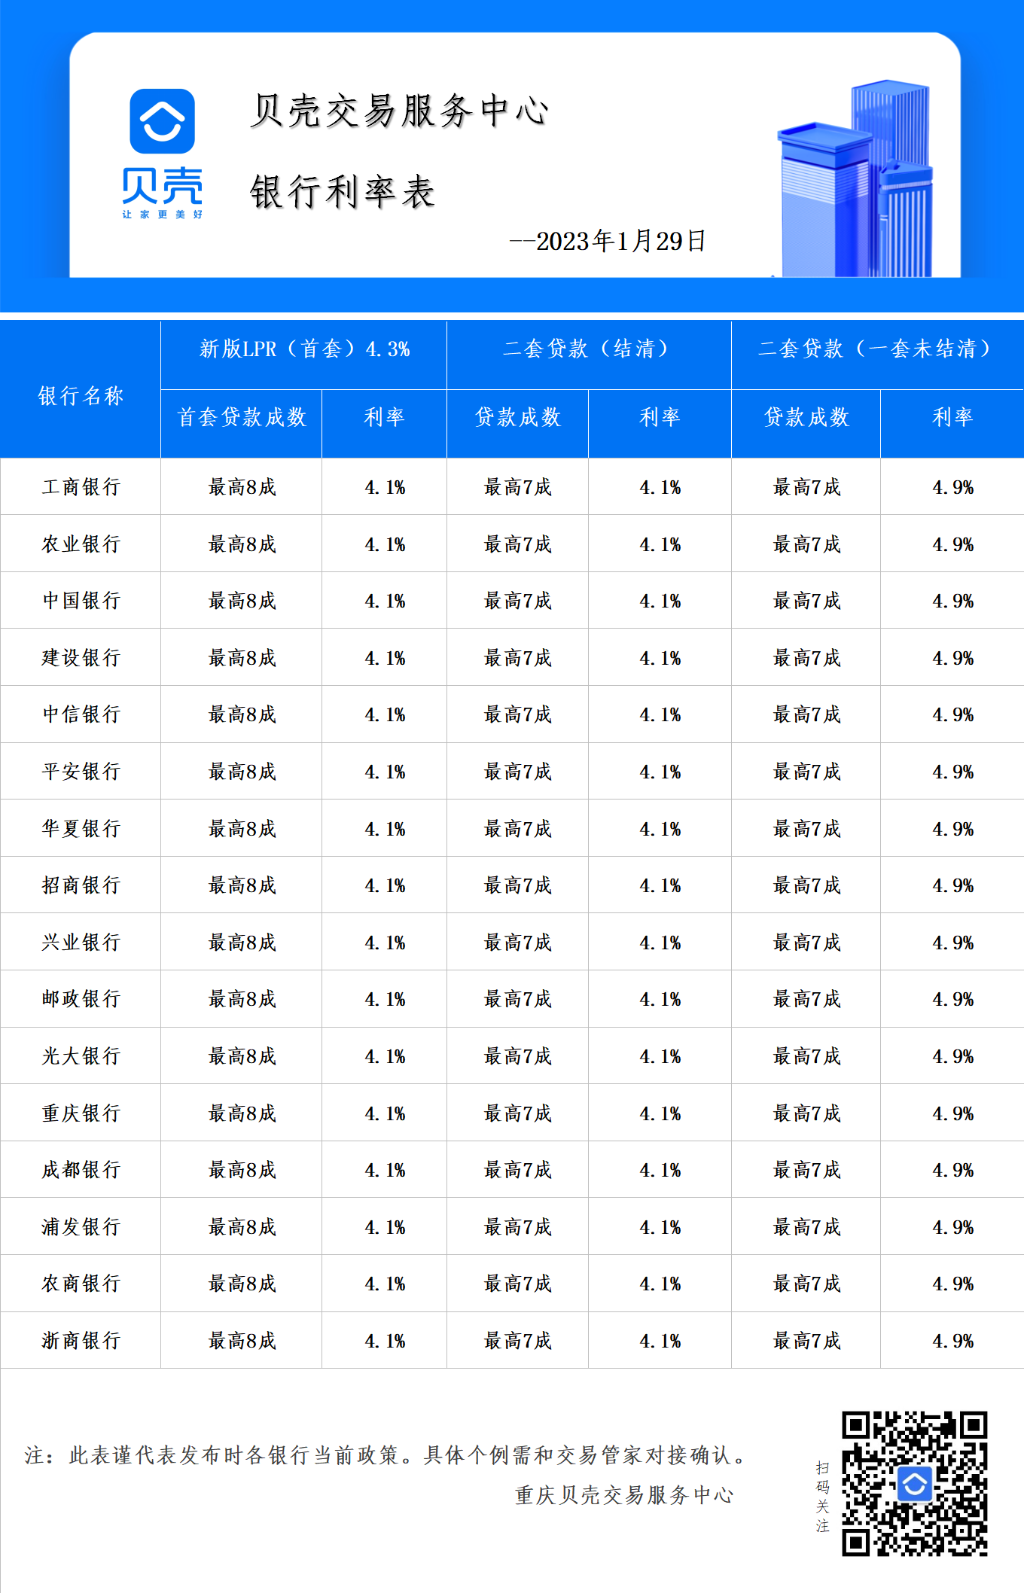 图1、重庆各银行房贷利率情况